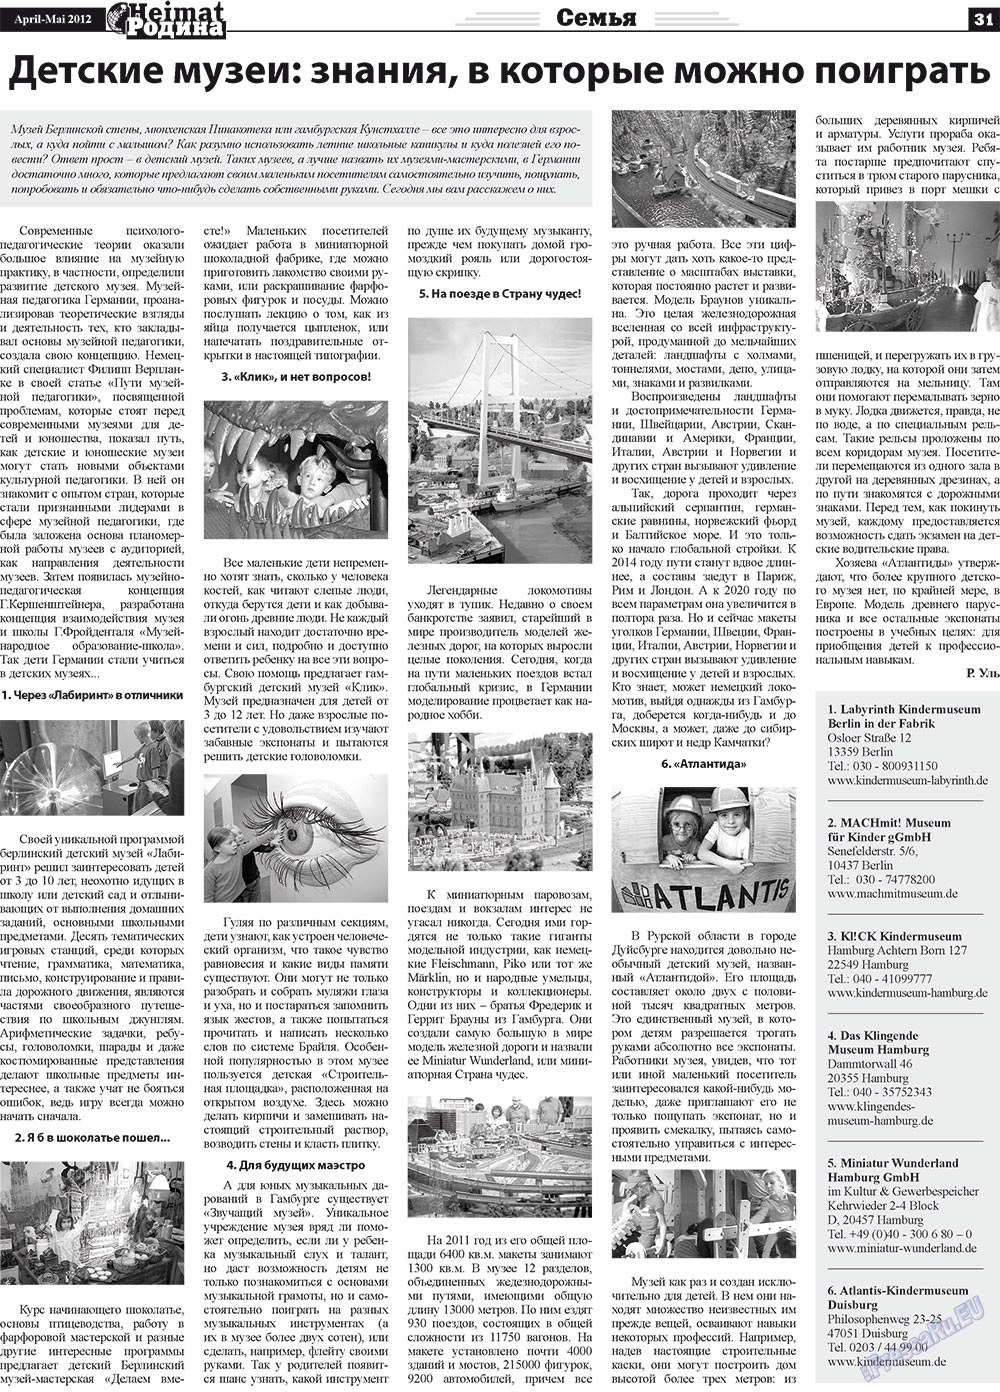 Heimat-Родина (газета). 2012 год, номер 4, стр. 31